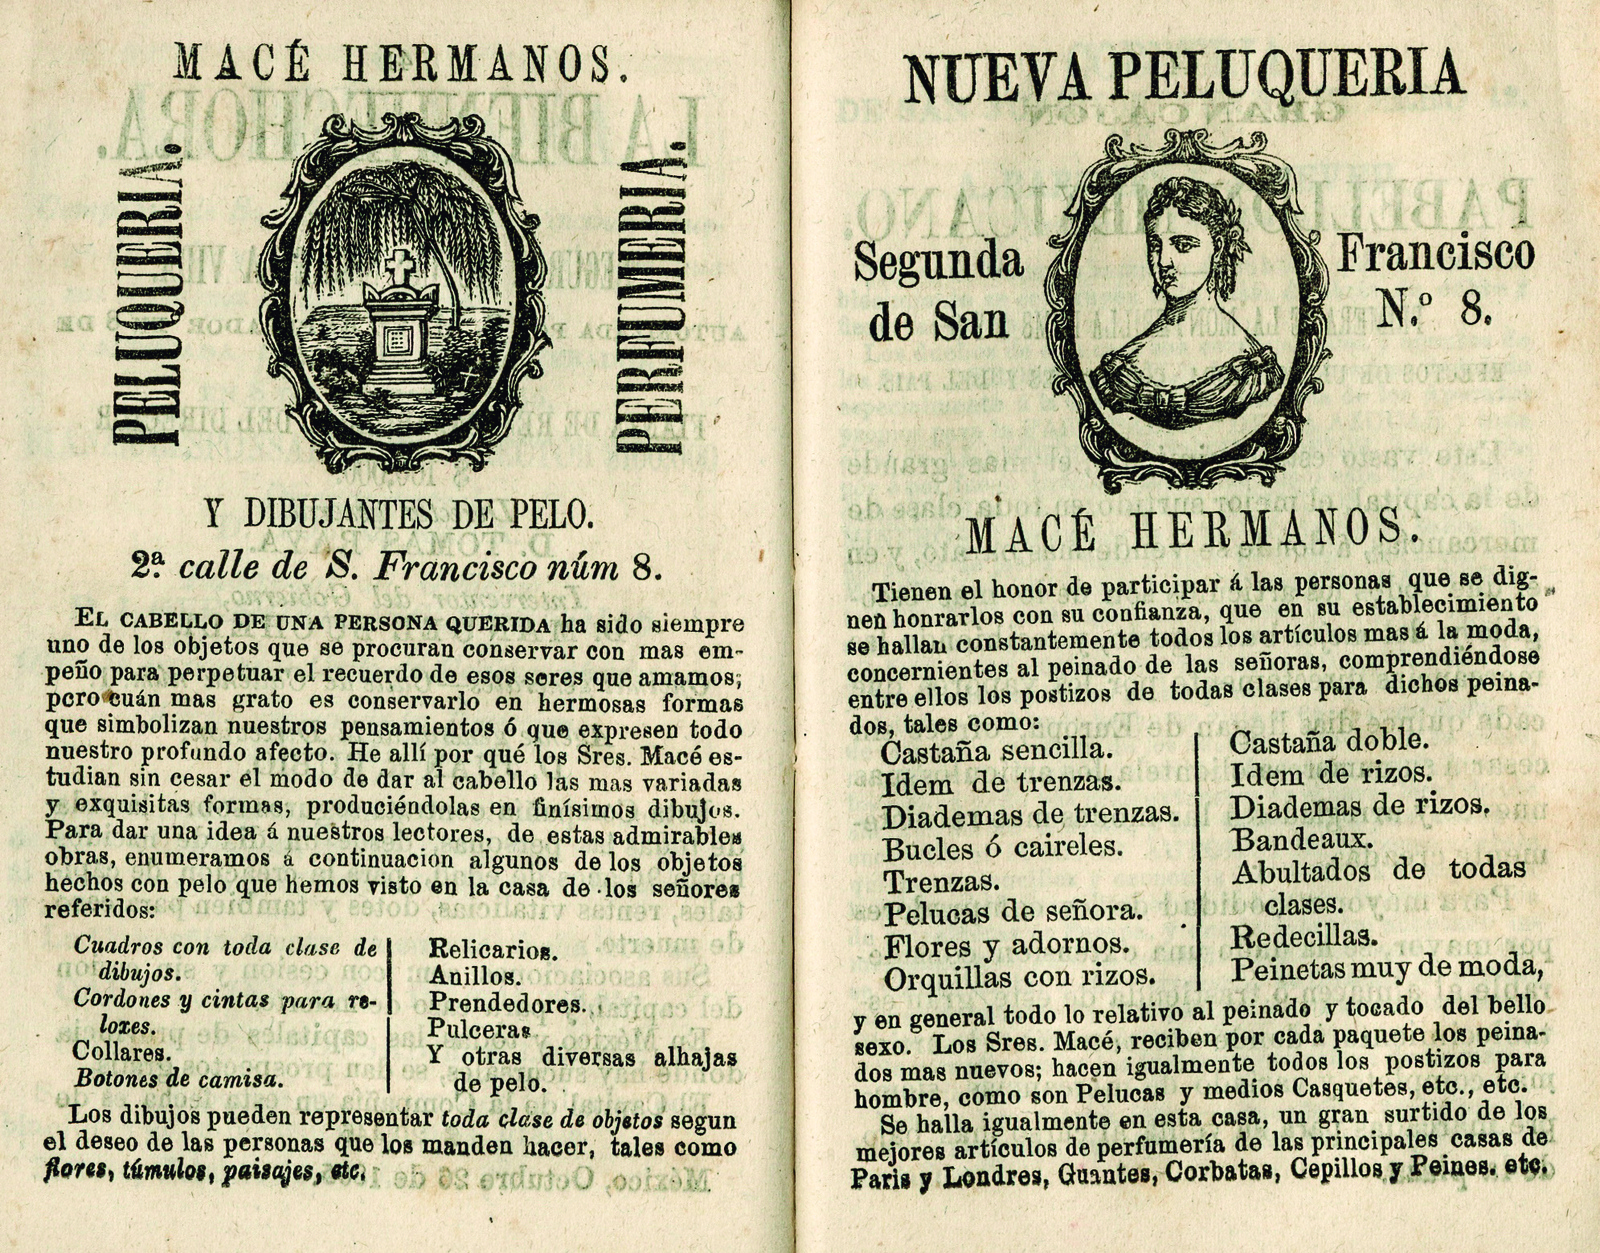 Calendario del Comercio por J. Parra y Alvarez para el año de 1866. Arreglado al meridiano de México.